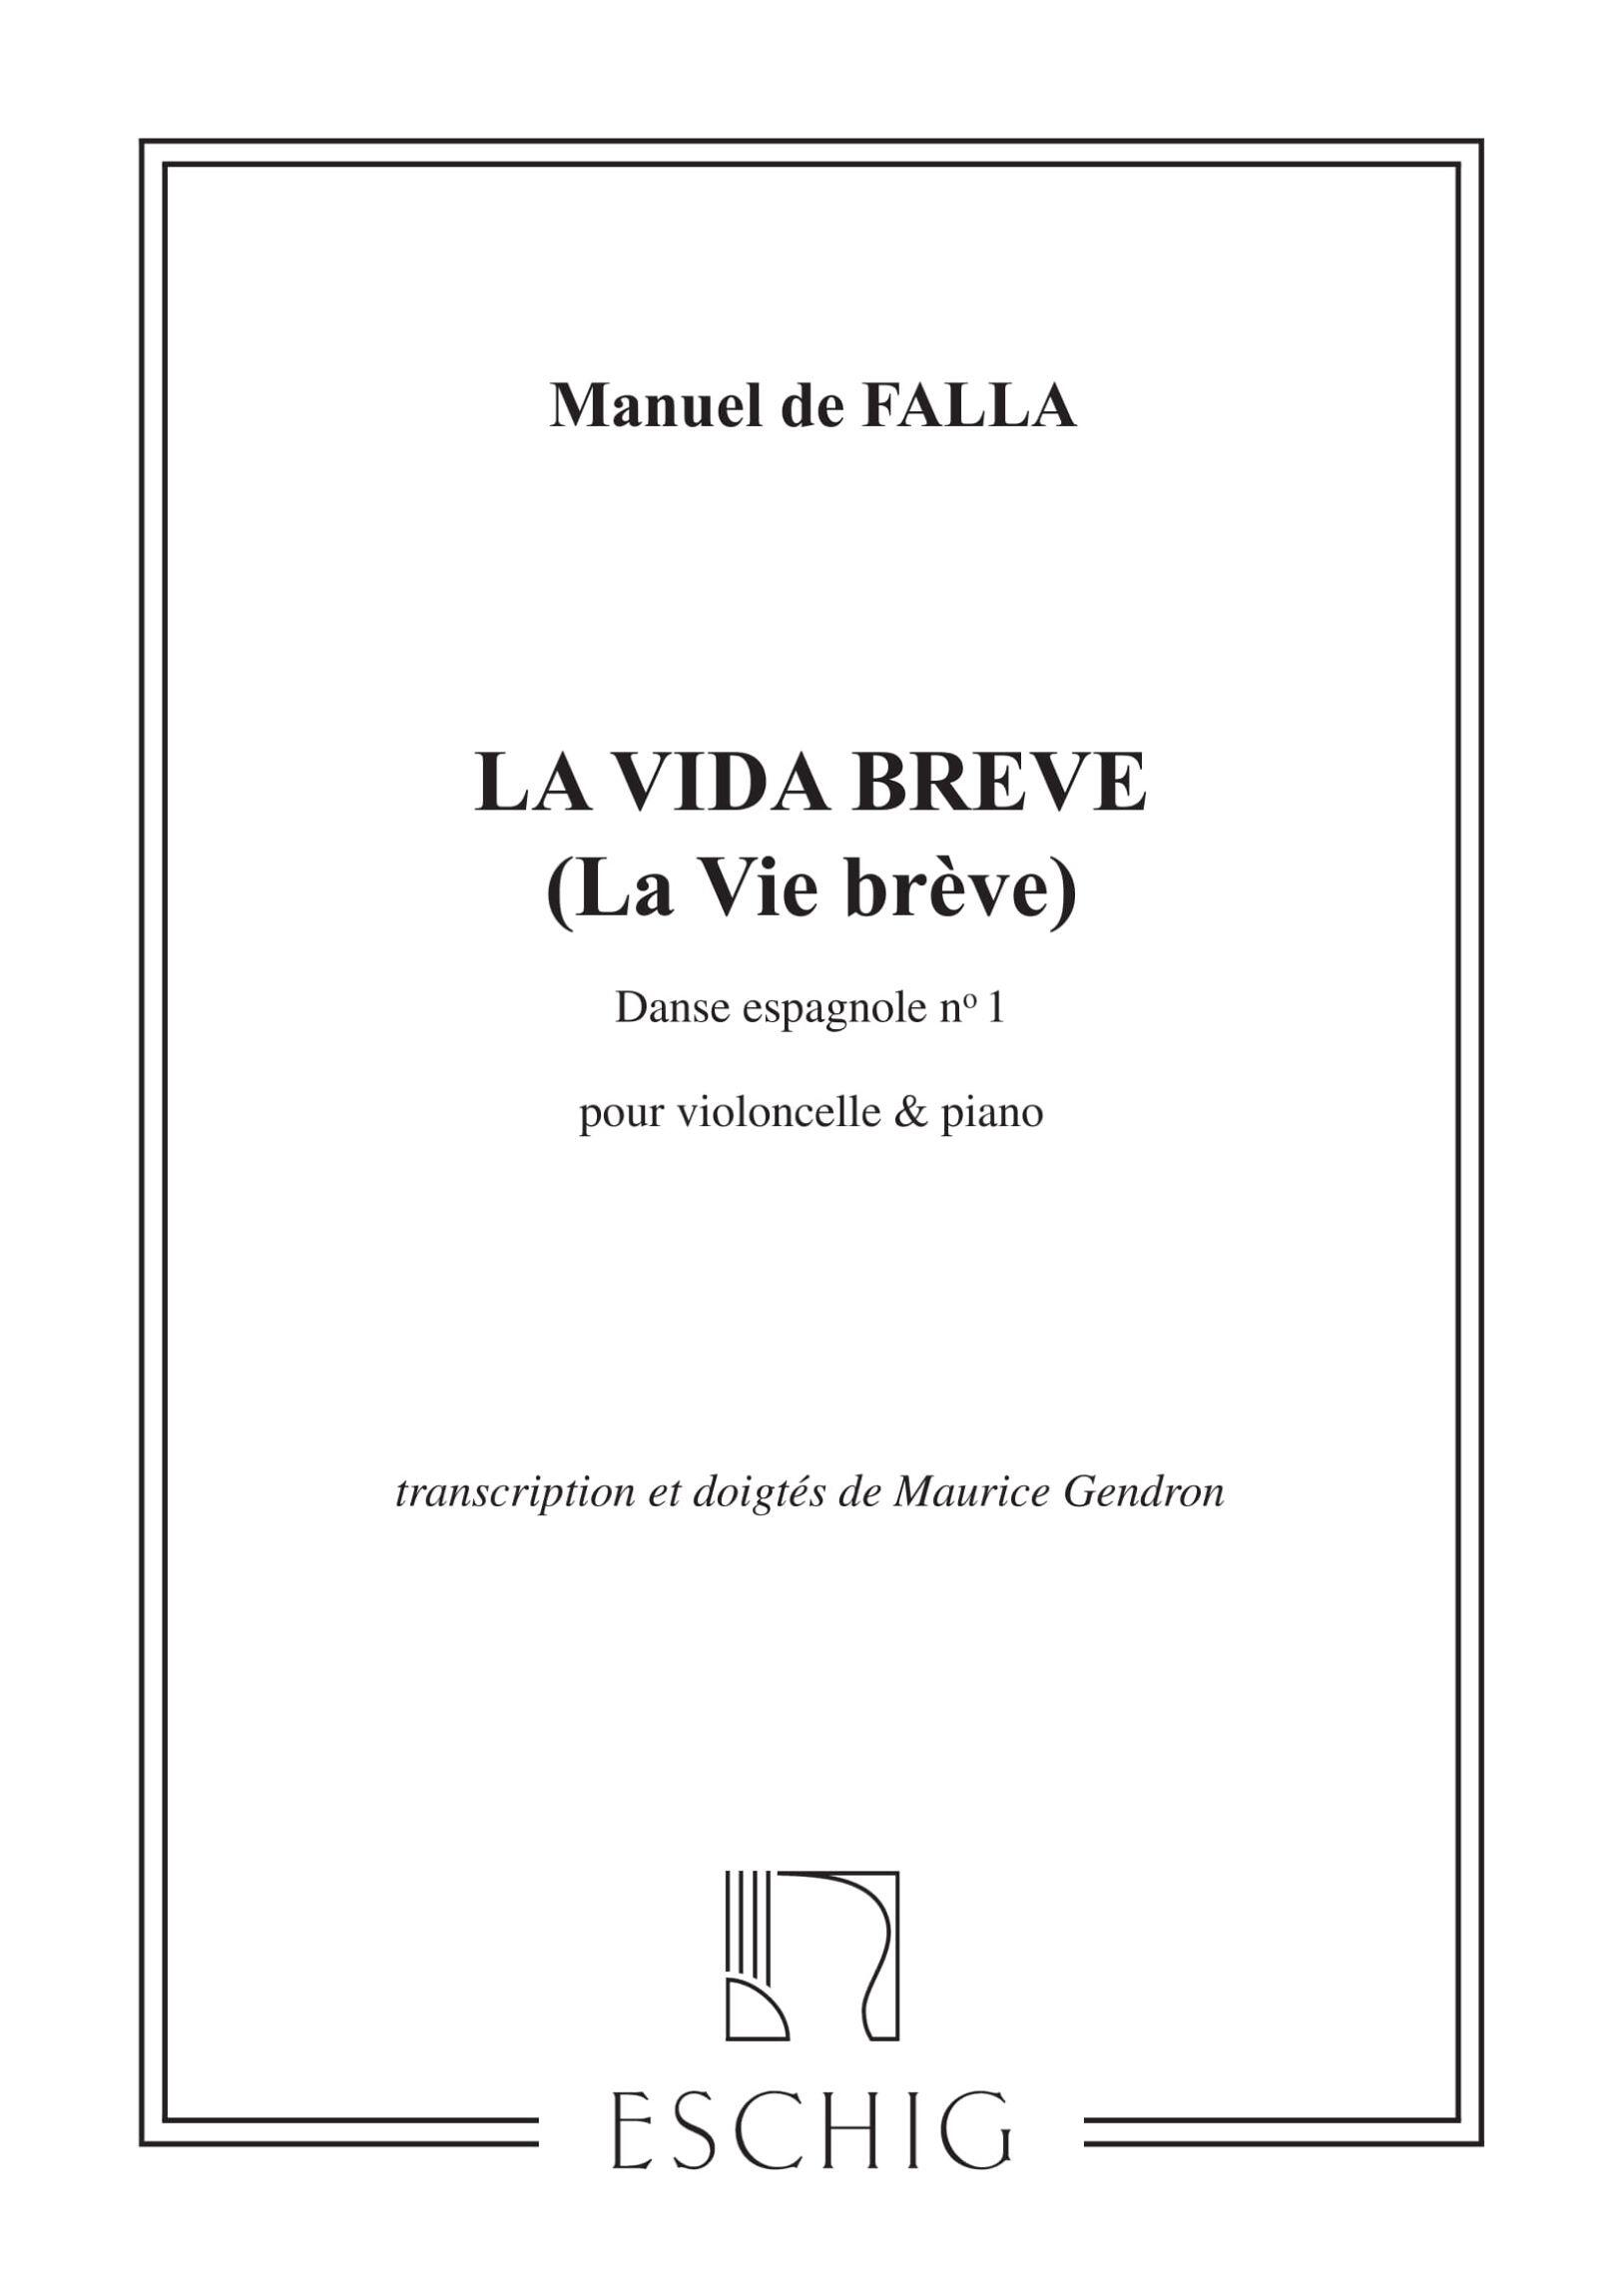 Max La Vie Breve Danse N 1 Pour Violoncelle & Piano : photo 1